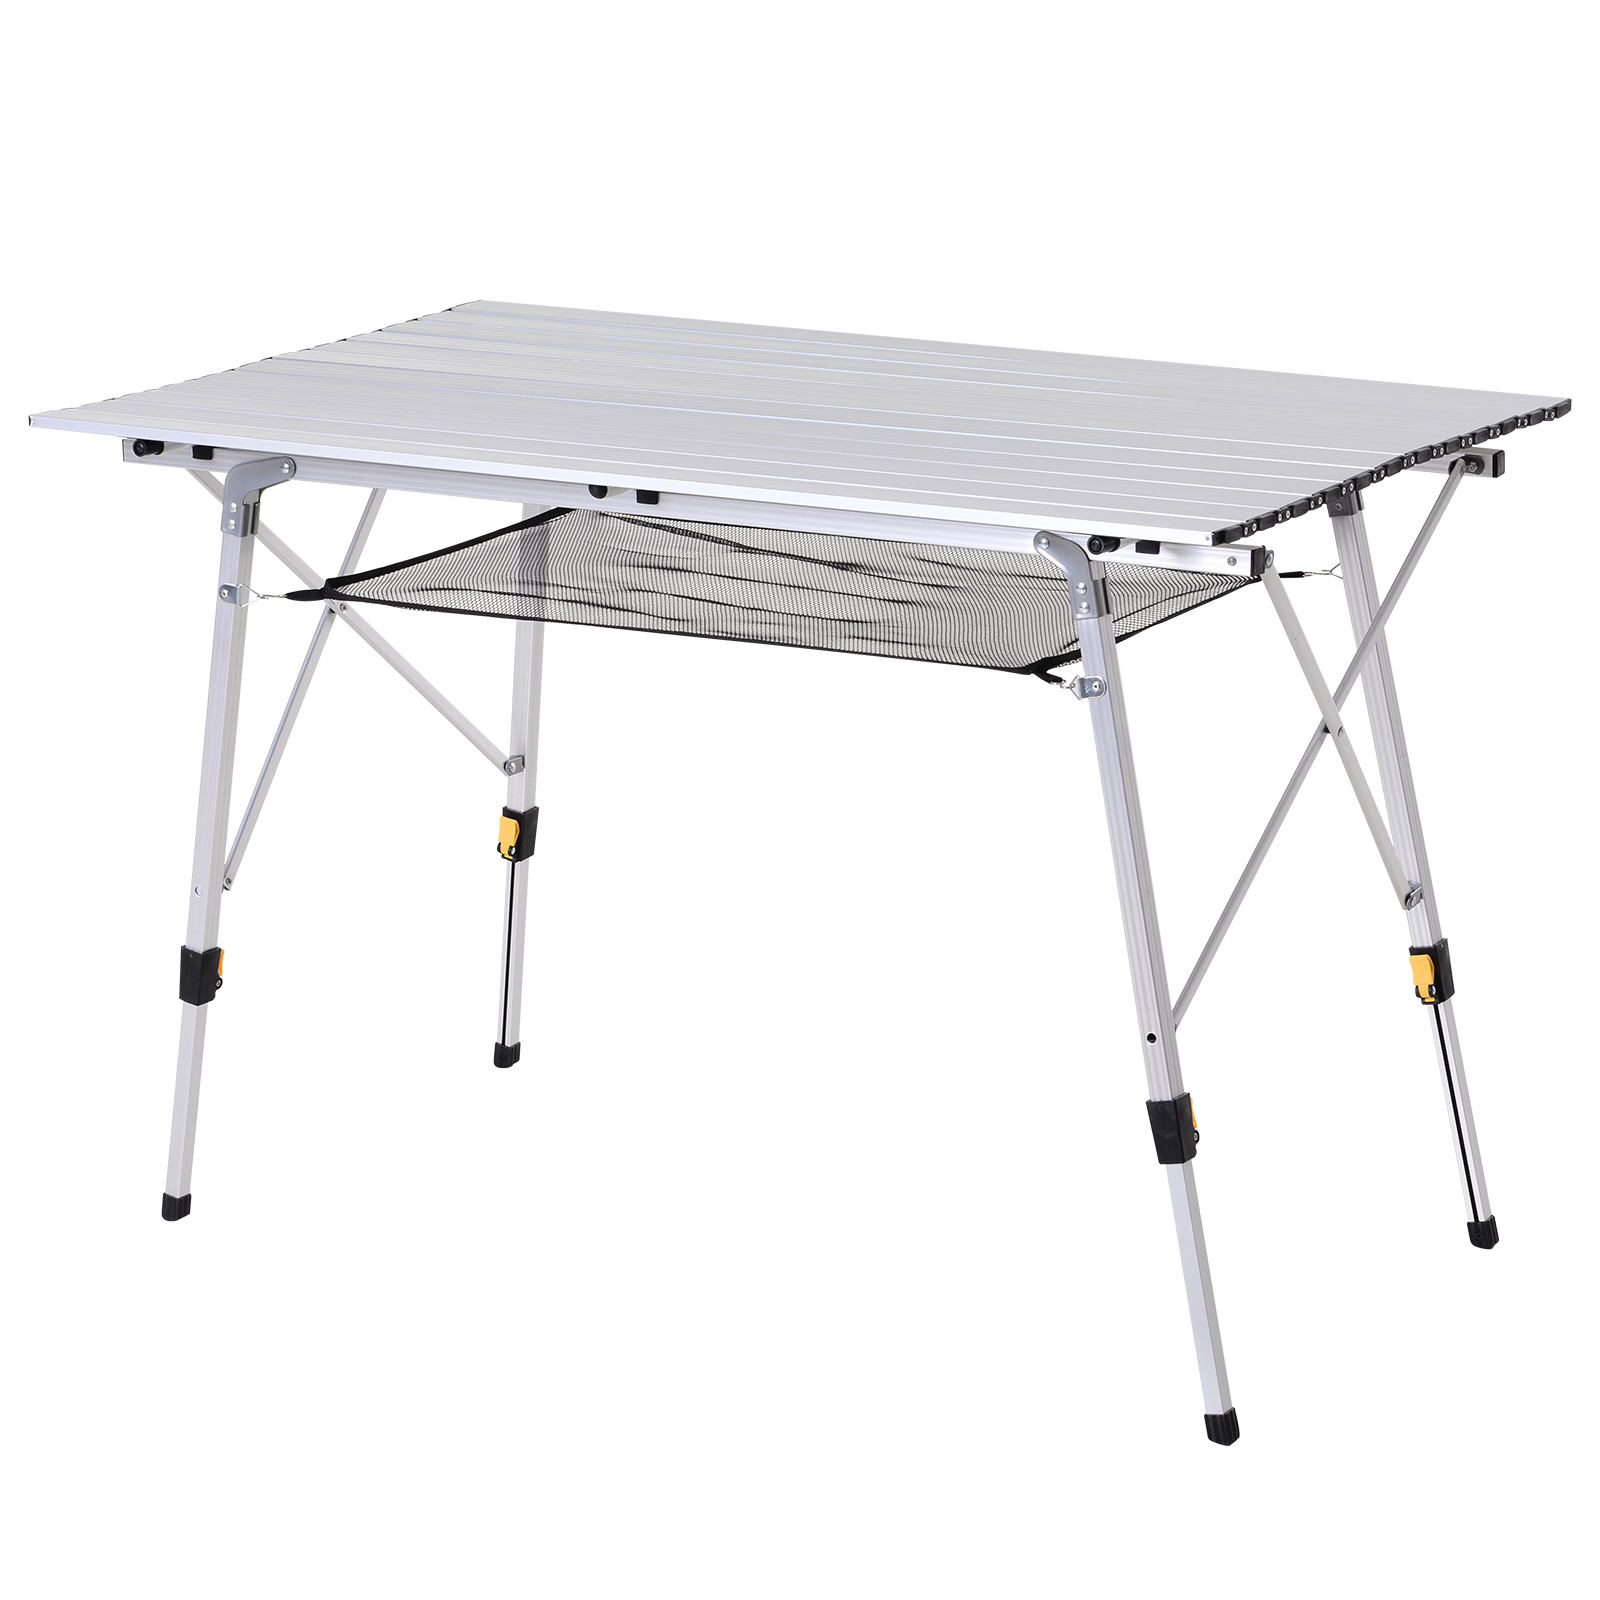 Table de Camping Pliante en Aluminium à Latte Enroulable 89x59x45